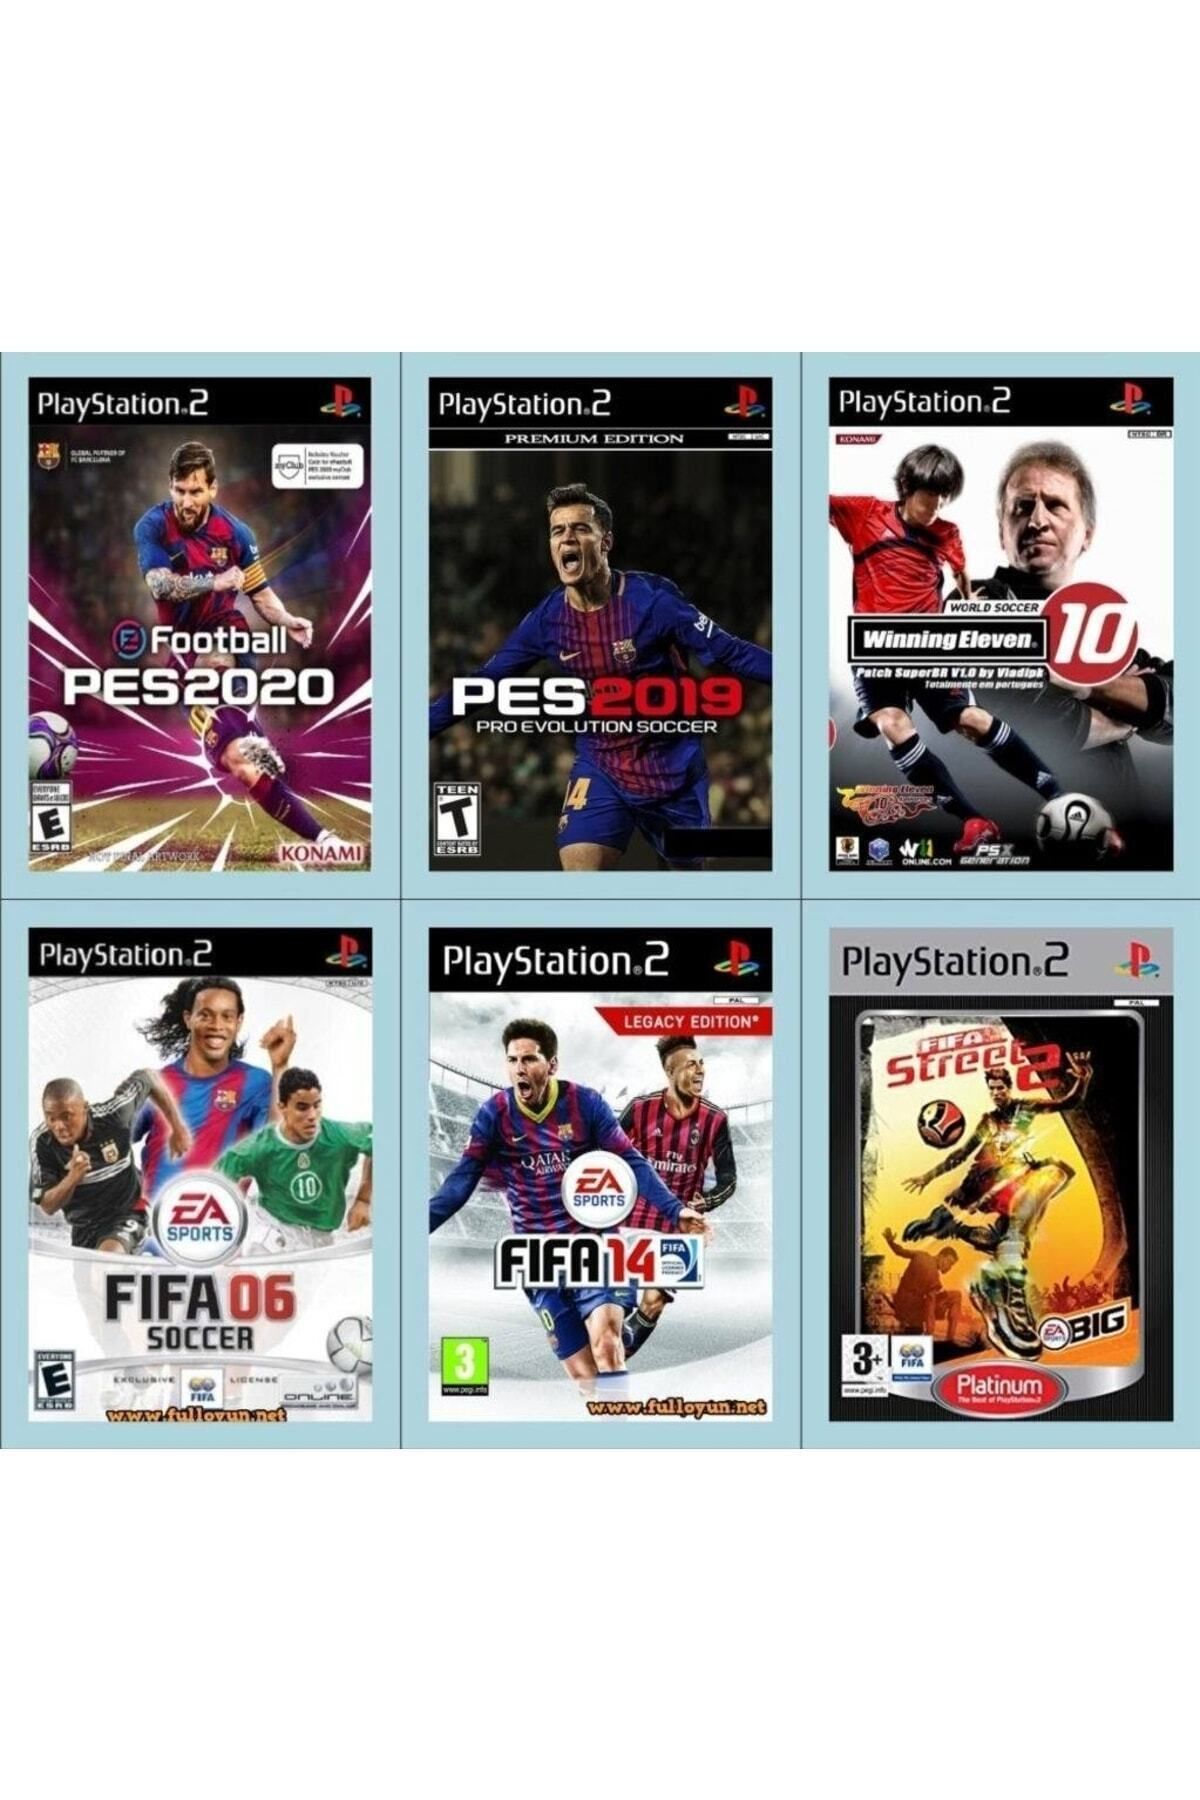 EA Sports Playstatıon 2 - En Güzel 6 Futbol Oyunu 2. Seri - Sadece Çipli Cihazlar Için!